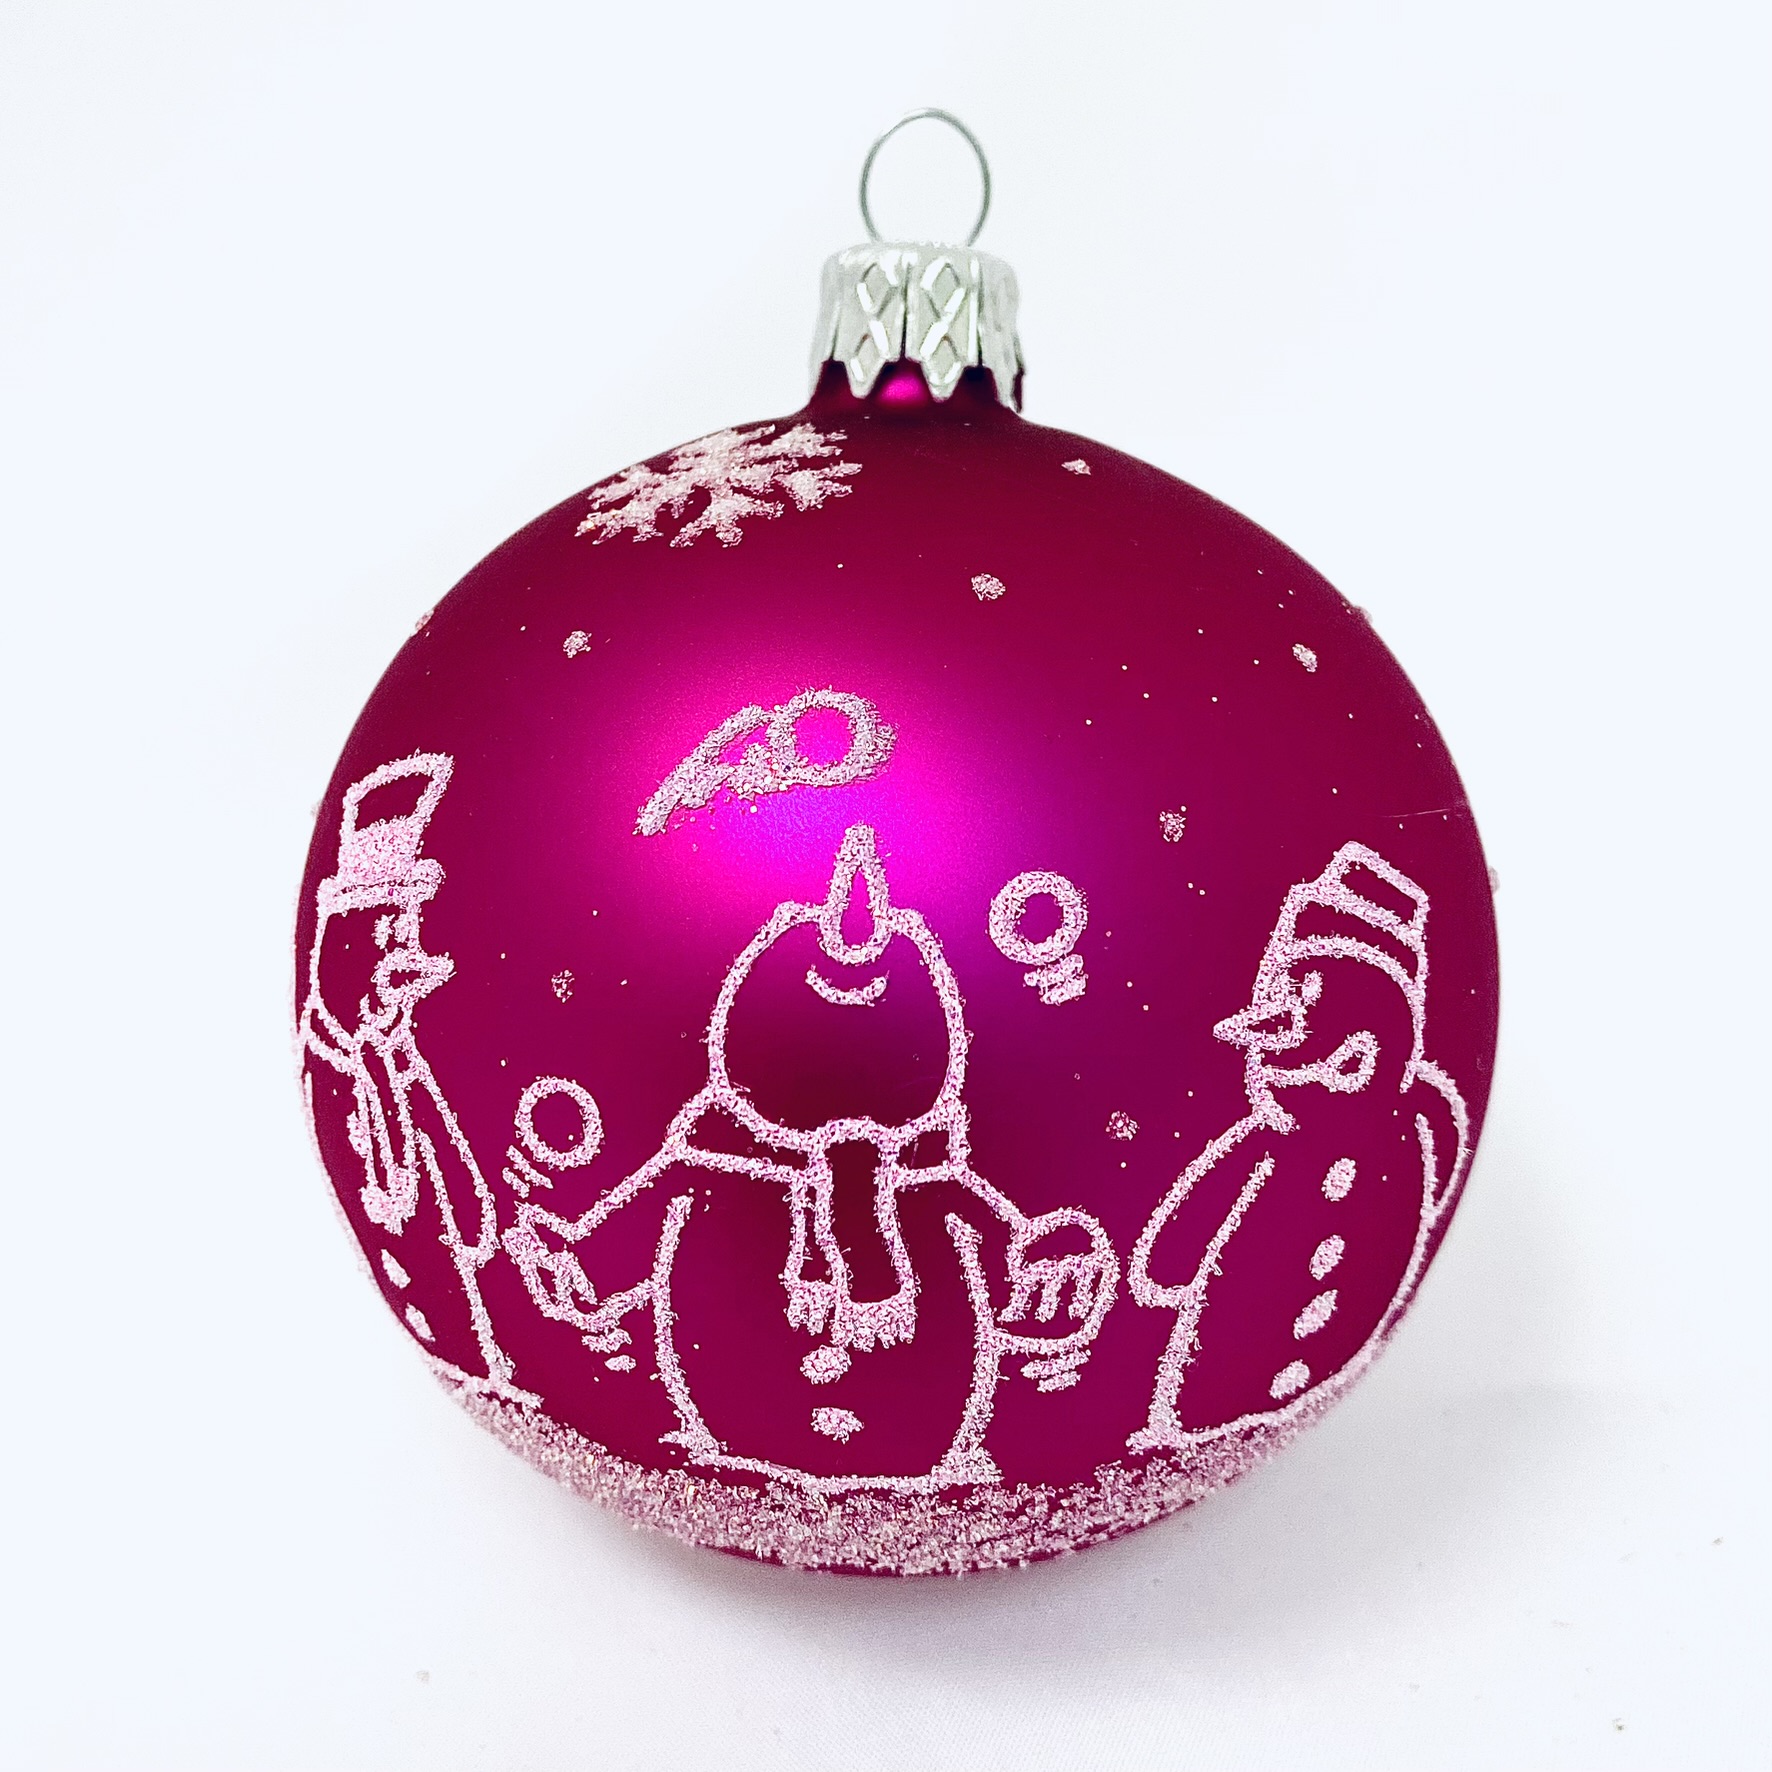 Skleněná vánoční ozdoba s textem na přání - Růžová vánoční ozdoba s dekorem sněhuláků (růžová, 1 ks, 8 cm) Balení: 1ks, Barva: růžová, Velikost: 8 cm